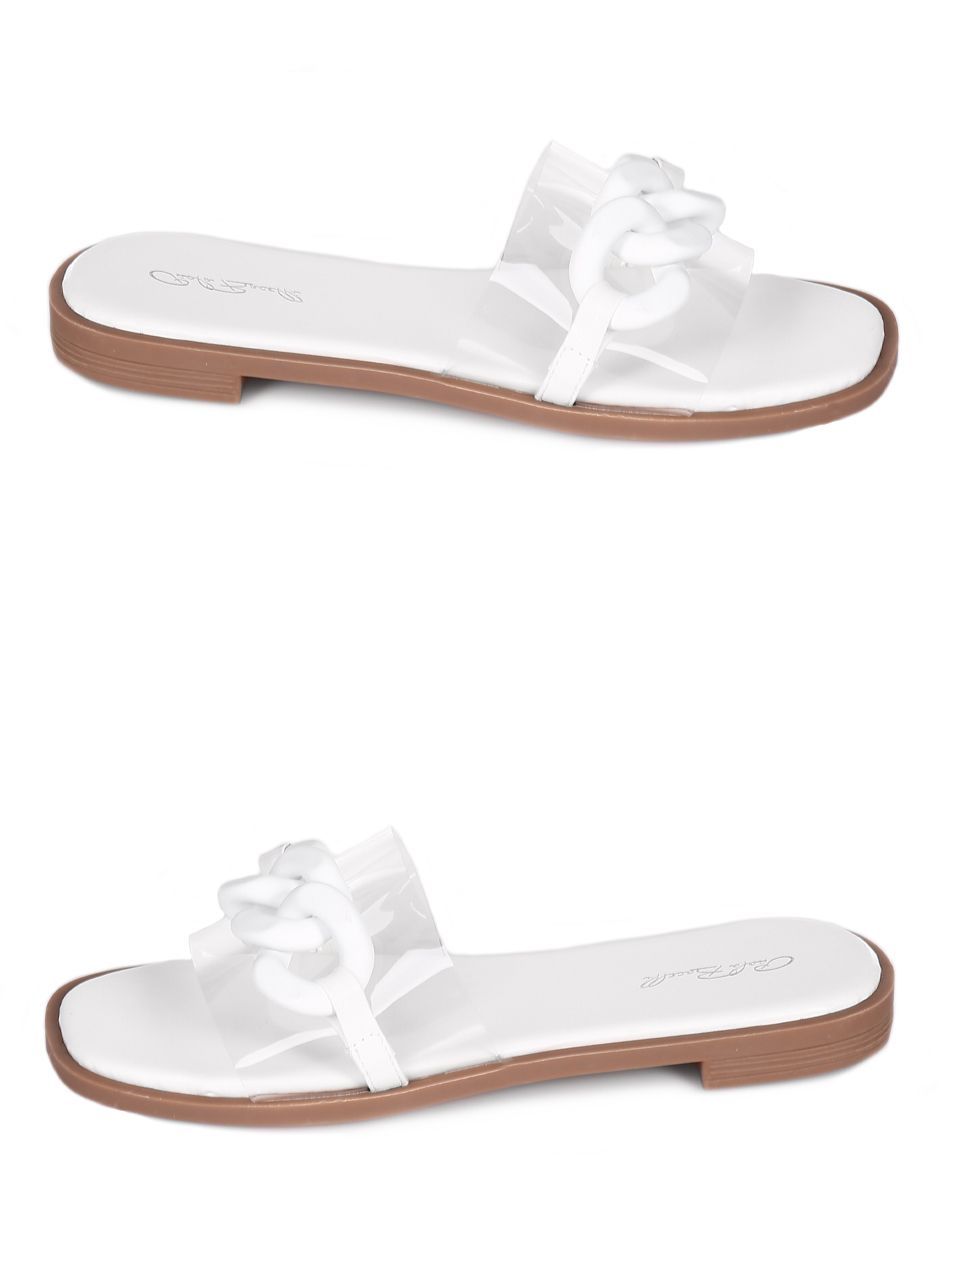 Ежедневни дамски чехли в бяло 5H-23096 white